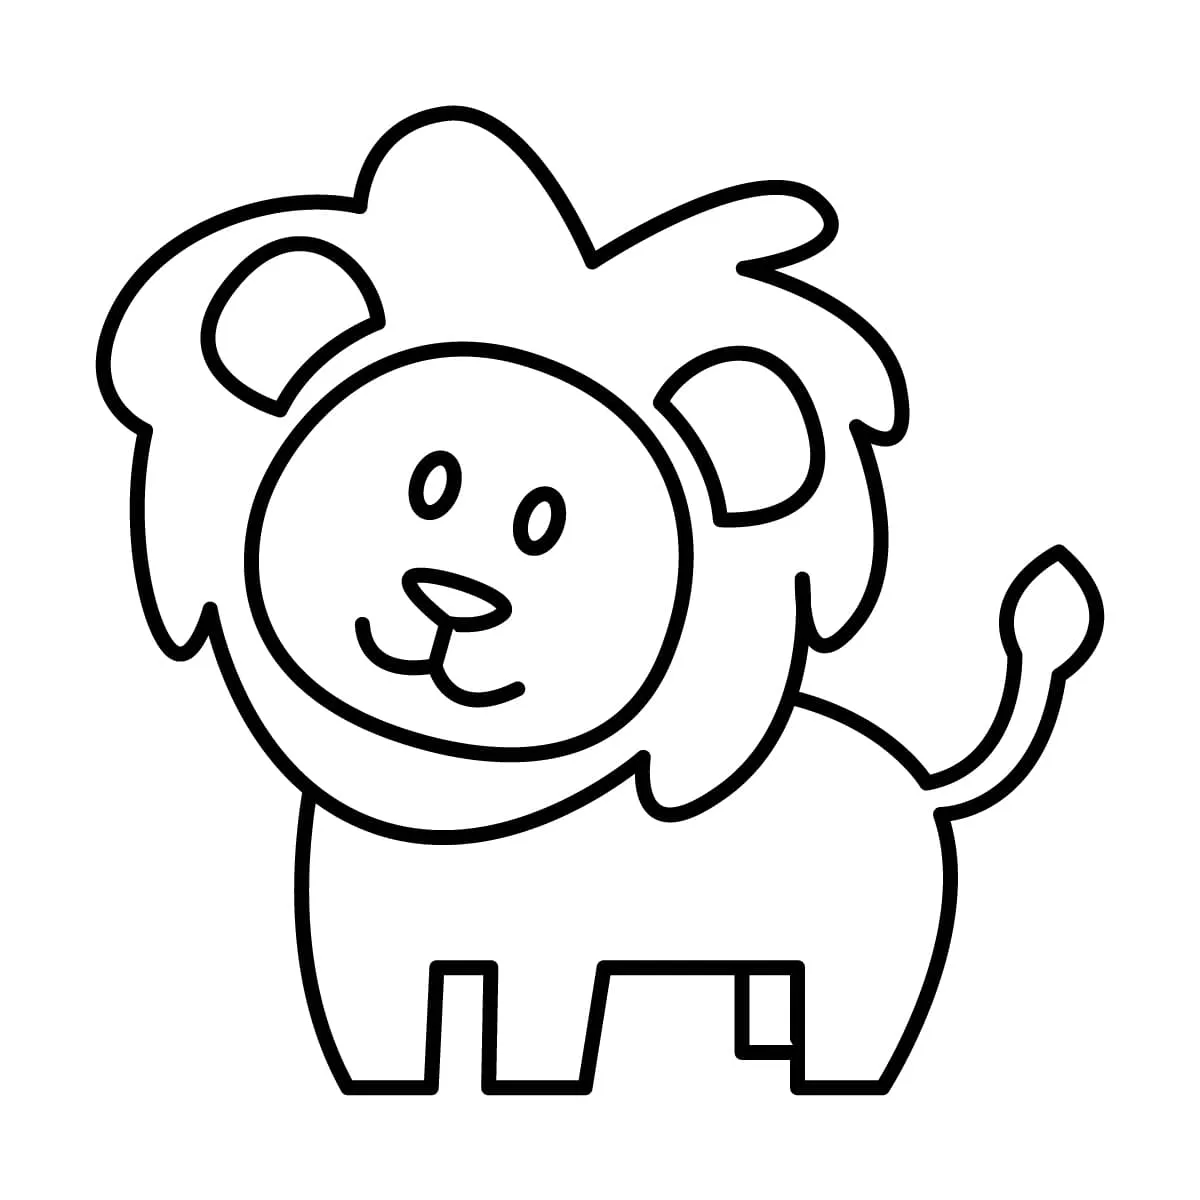 Dibujo de león para colorear e imprimir - Dibujos y colores